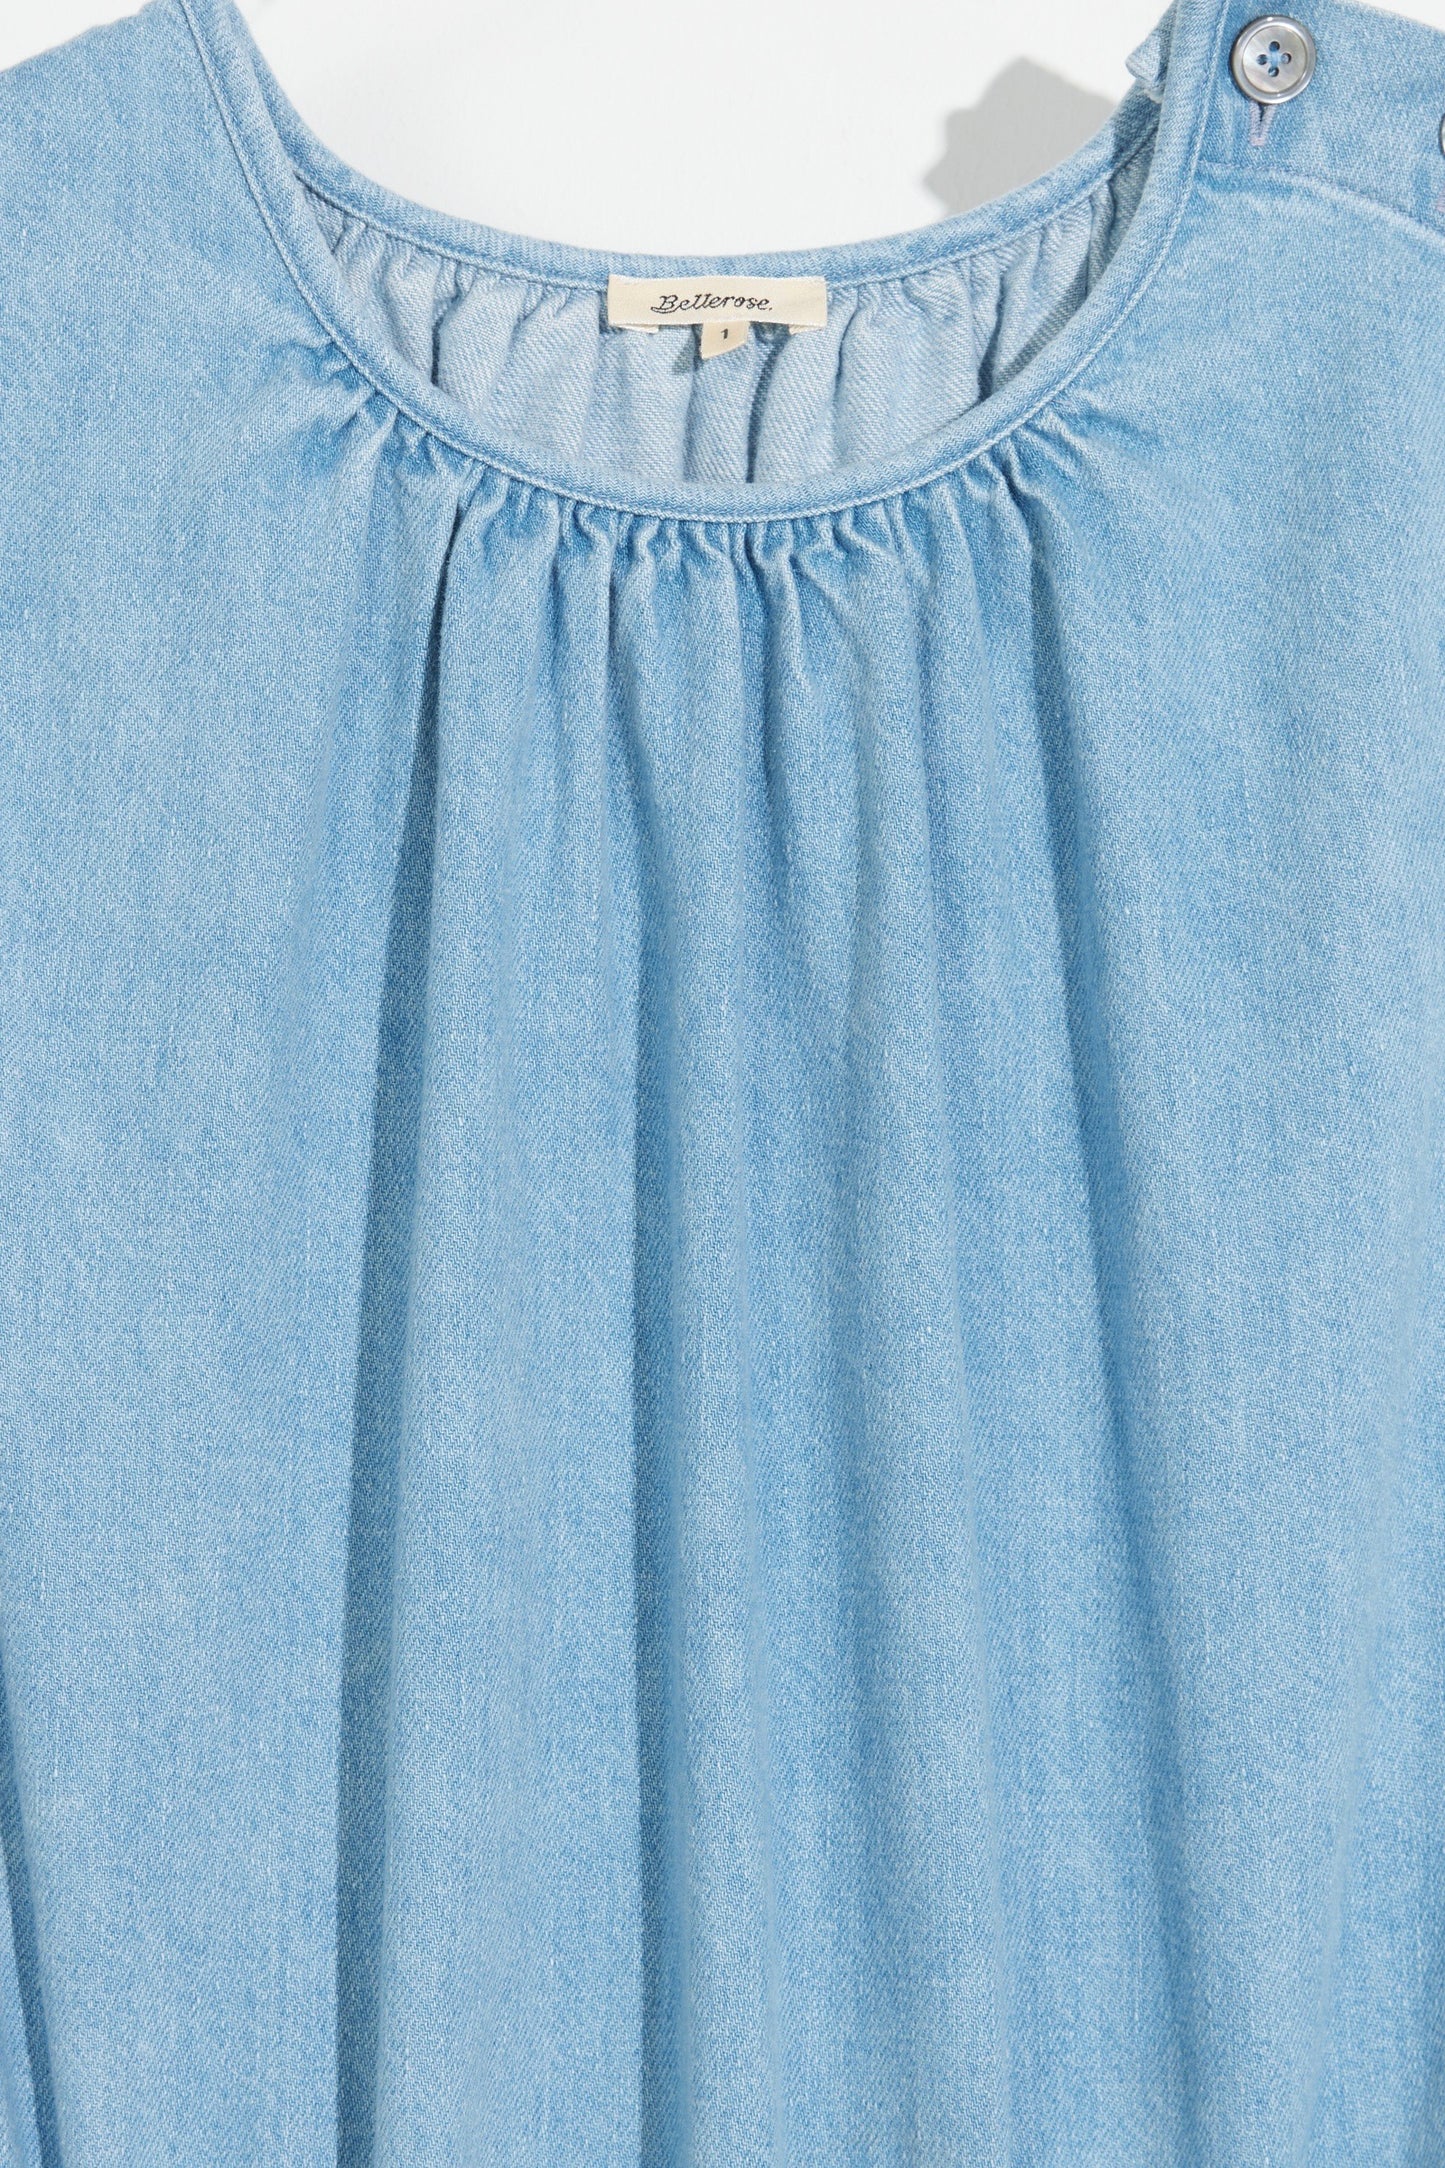 Bellerose - Papaye Jumpsuit: LT Blue Bleach